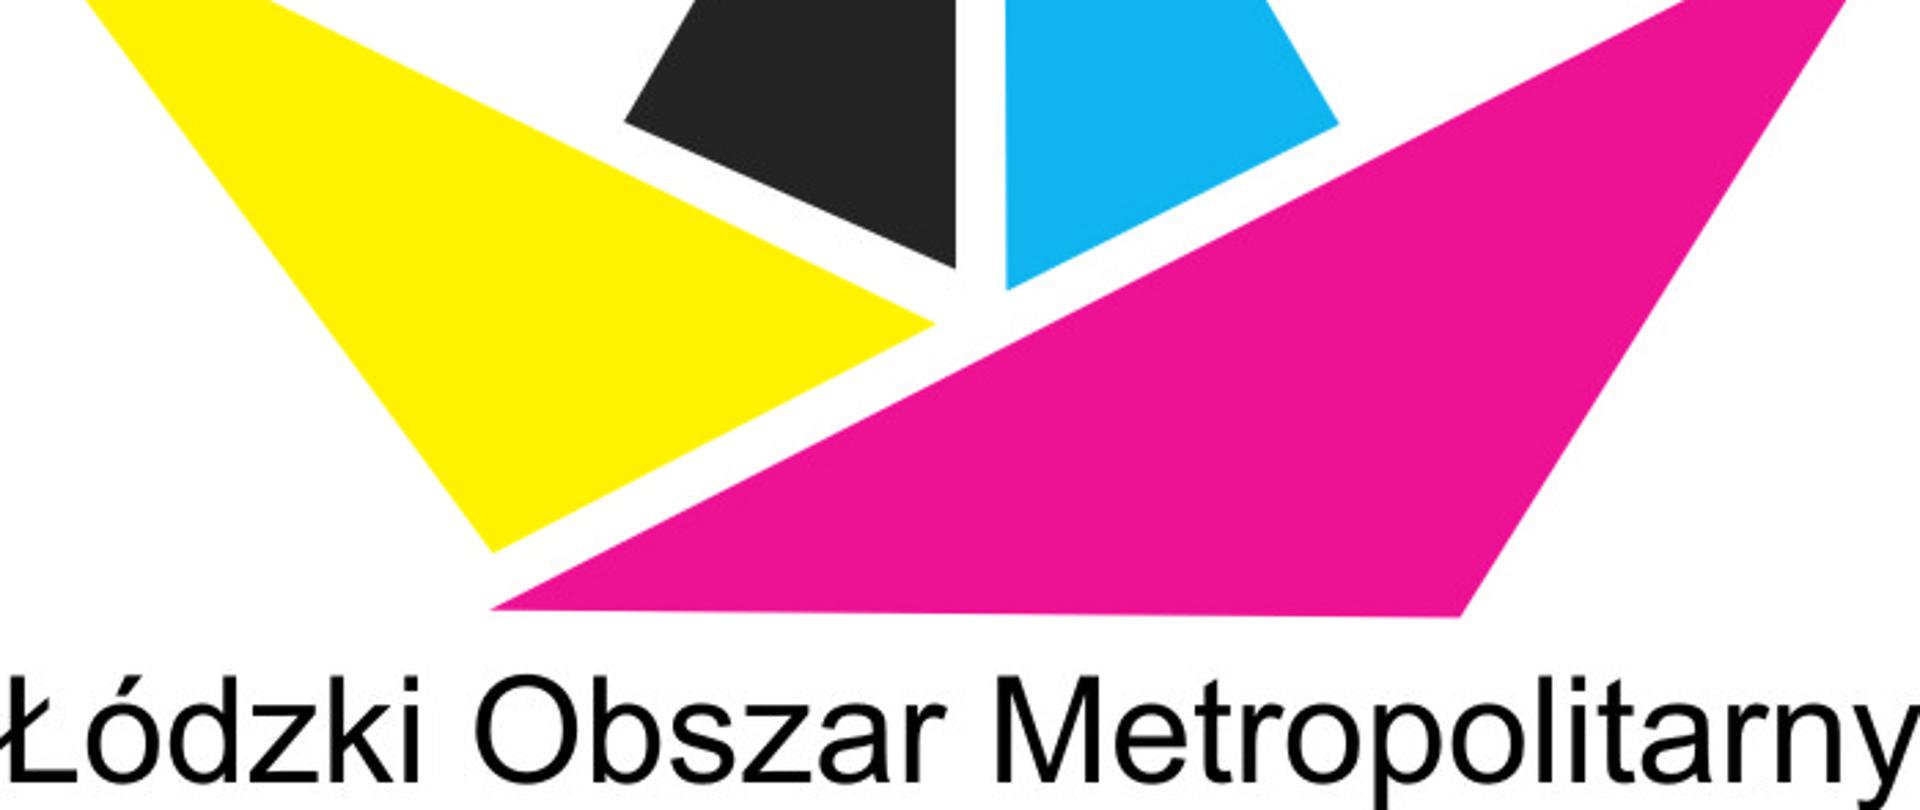 Na zdjęciu widniej logo Łódzkiego Obszaru Metropolitarnego